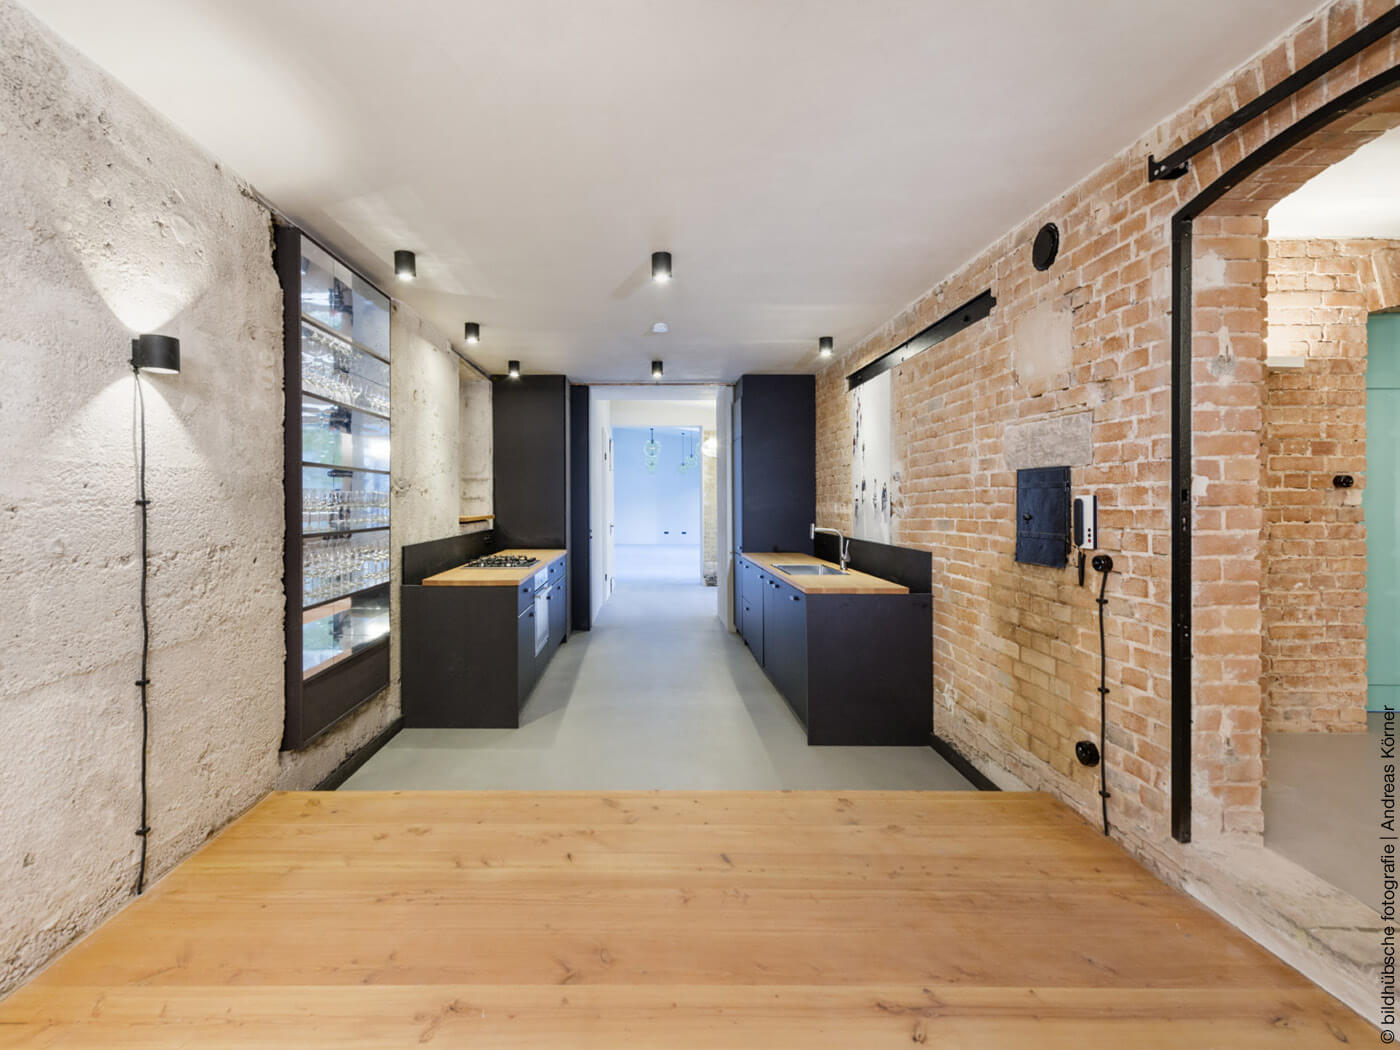 Küche mit schwarzer Küchenzeile und unverputzten Wänden